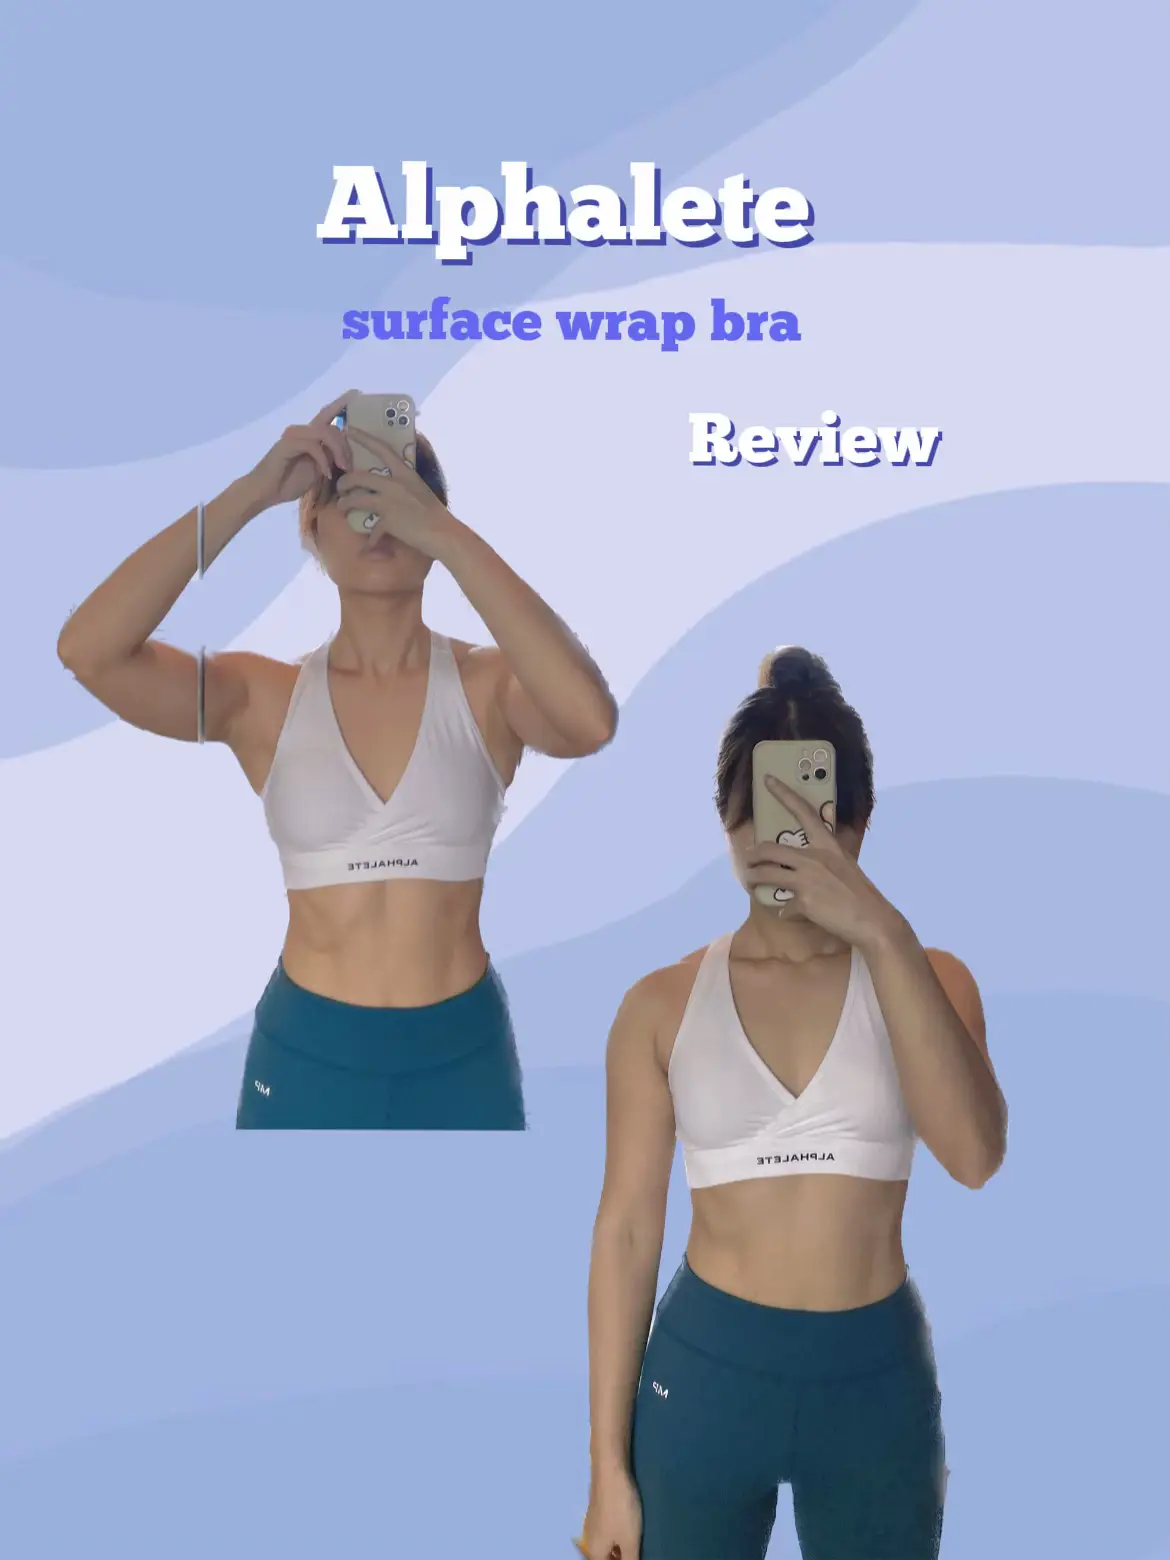 Alphalete amplify haul - honest review 